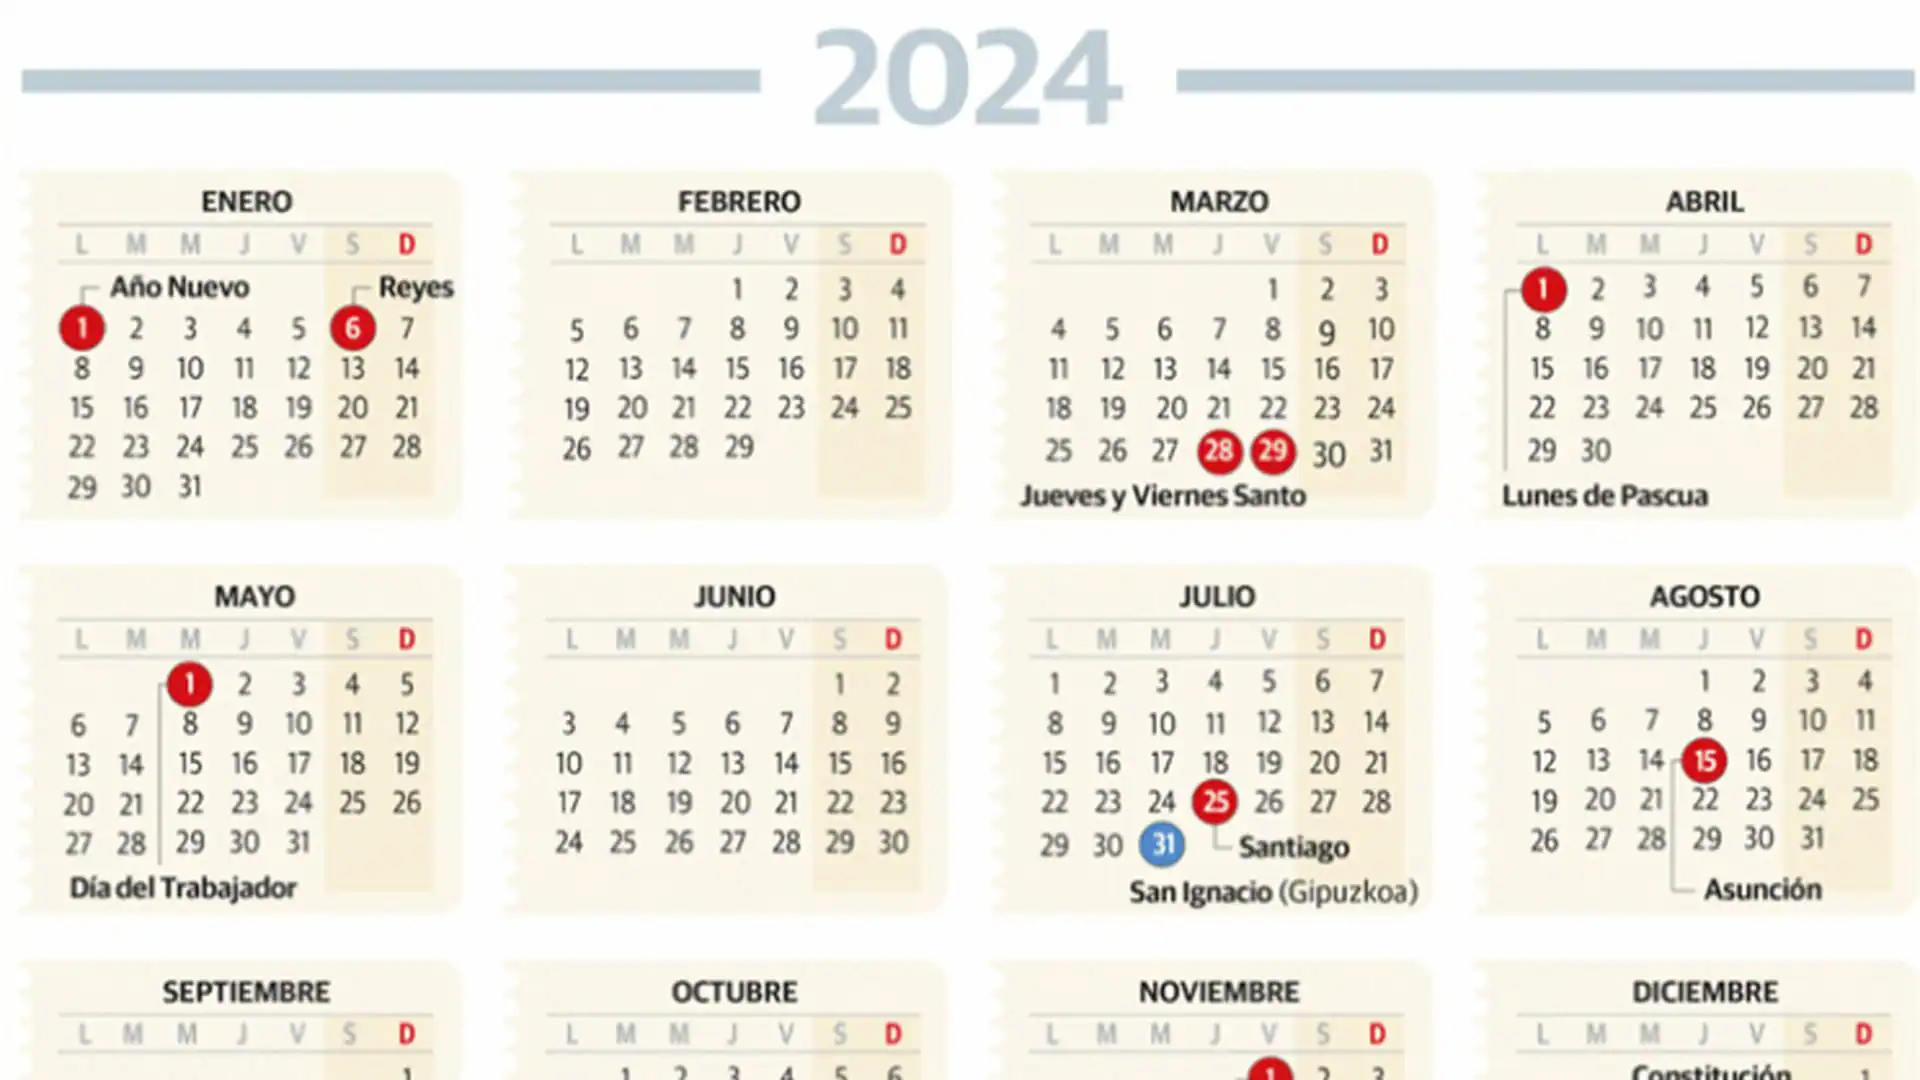 Así queda el calendario laboral de Euskadi de 2024 El Diario Vasco